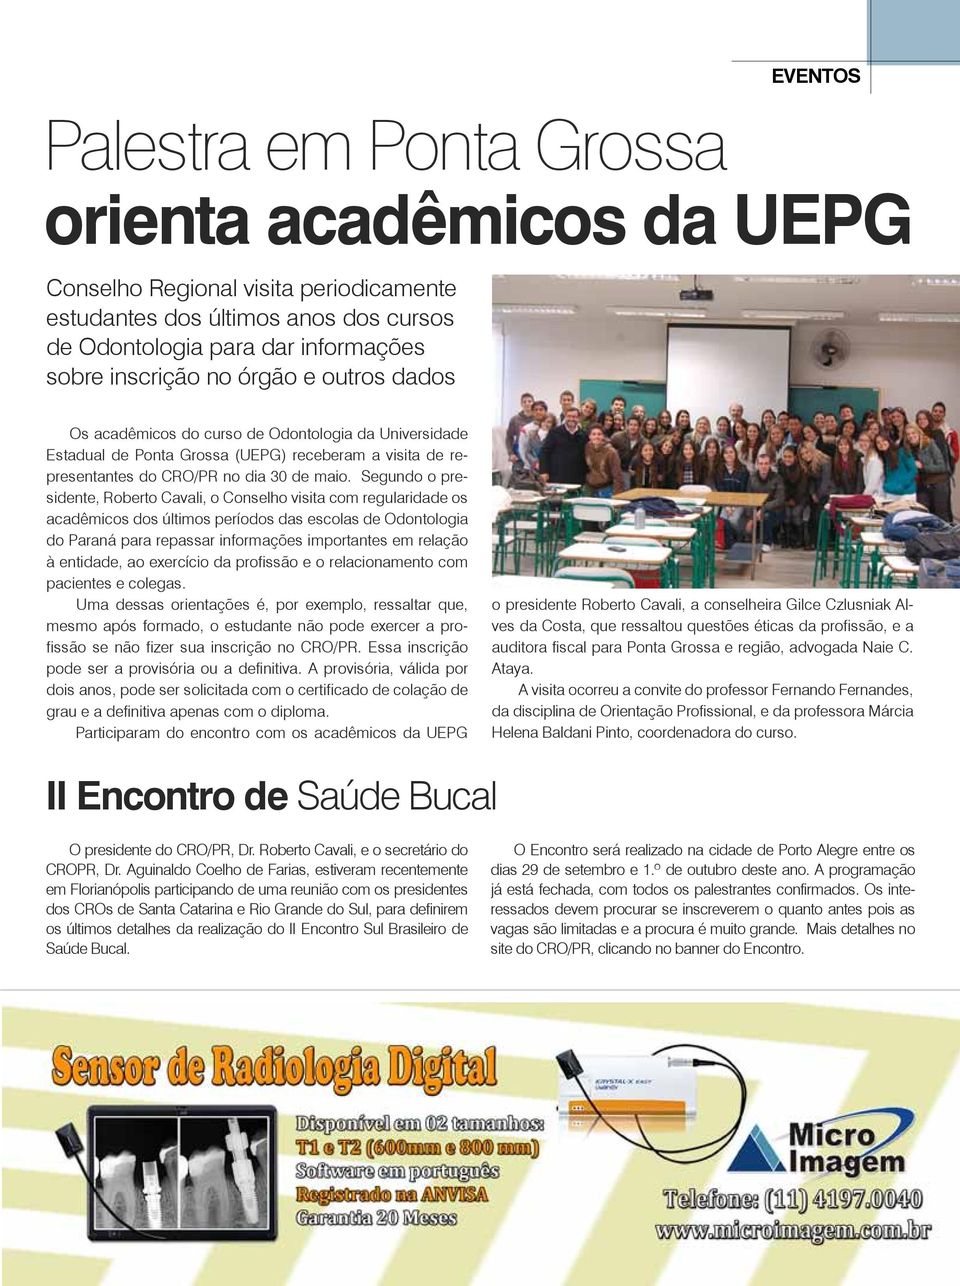 Segundo o presidente, Roberto Cavali, o Conselho visita com regularidade os acadêmicos dos últimos períodos das escolas de Odontologia do Paraná para repassar informações importantes em relação à